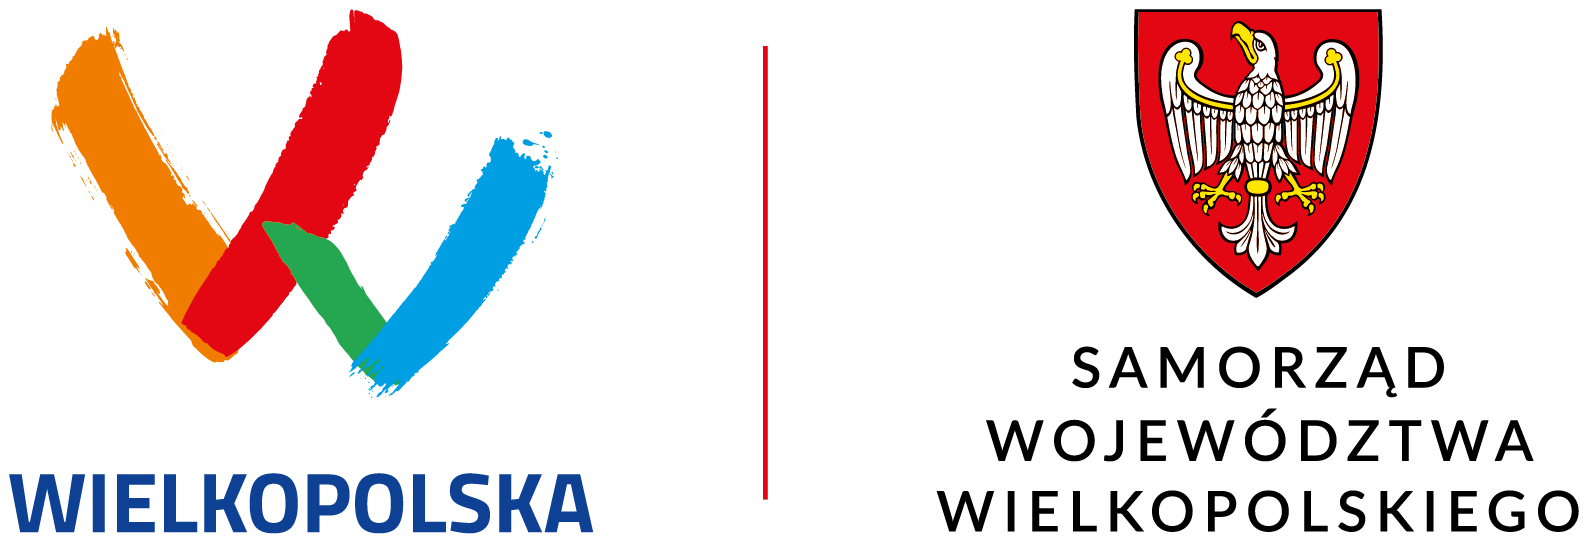 logotyp samorządu województwa wielkopolskiego